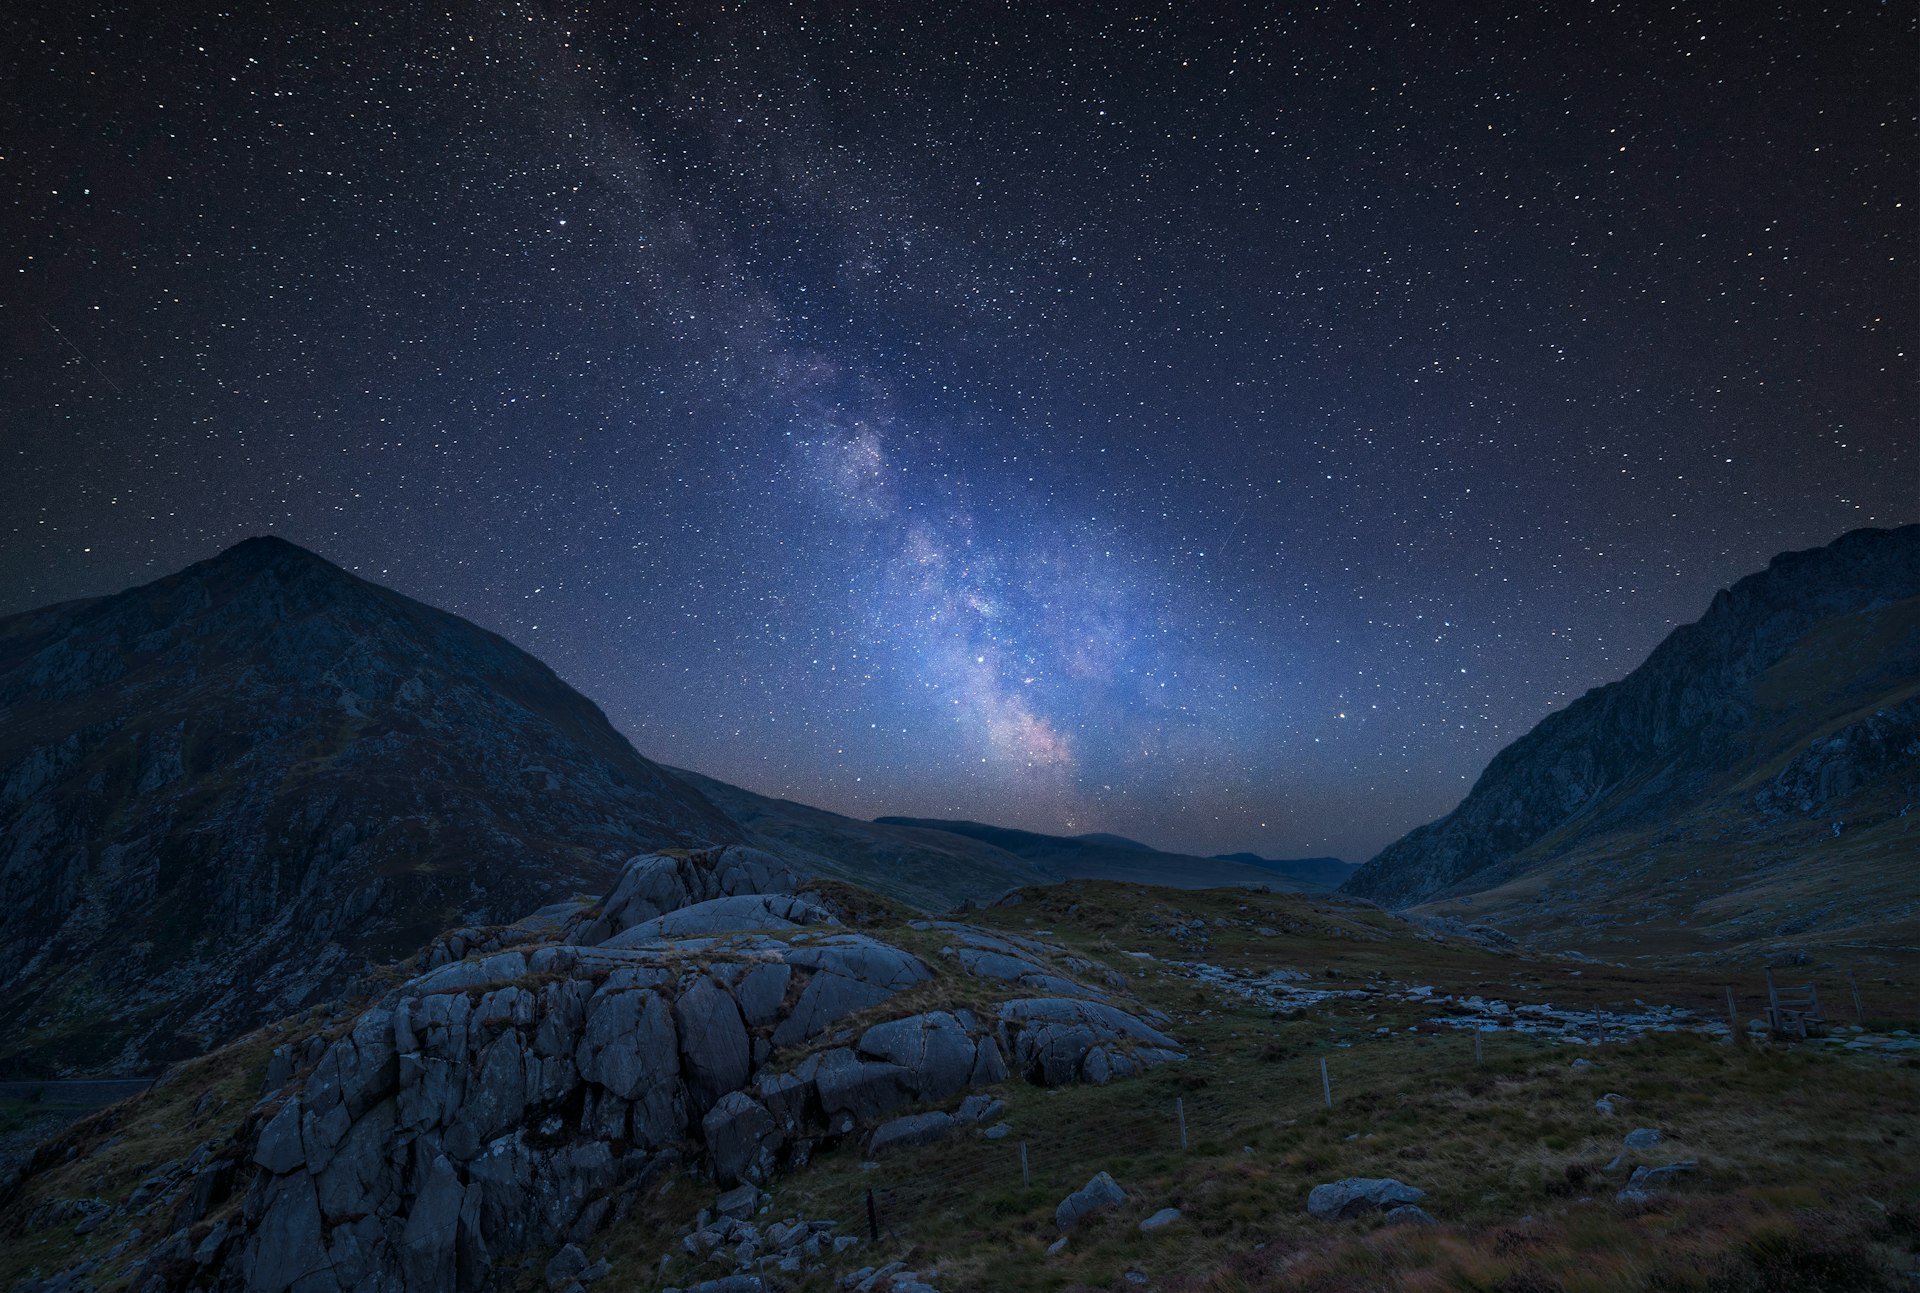 Impressionante imagem composta vibrante da Via Láctea sobre uma bela imagem de paisagem temperamental de um vale no País de Gales